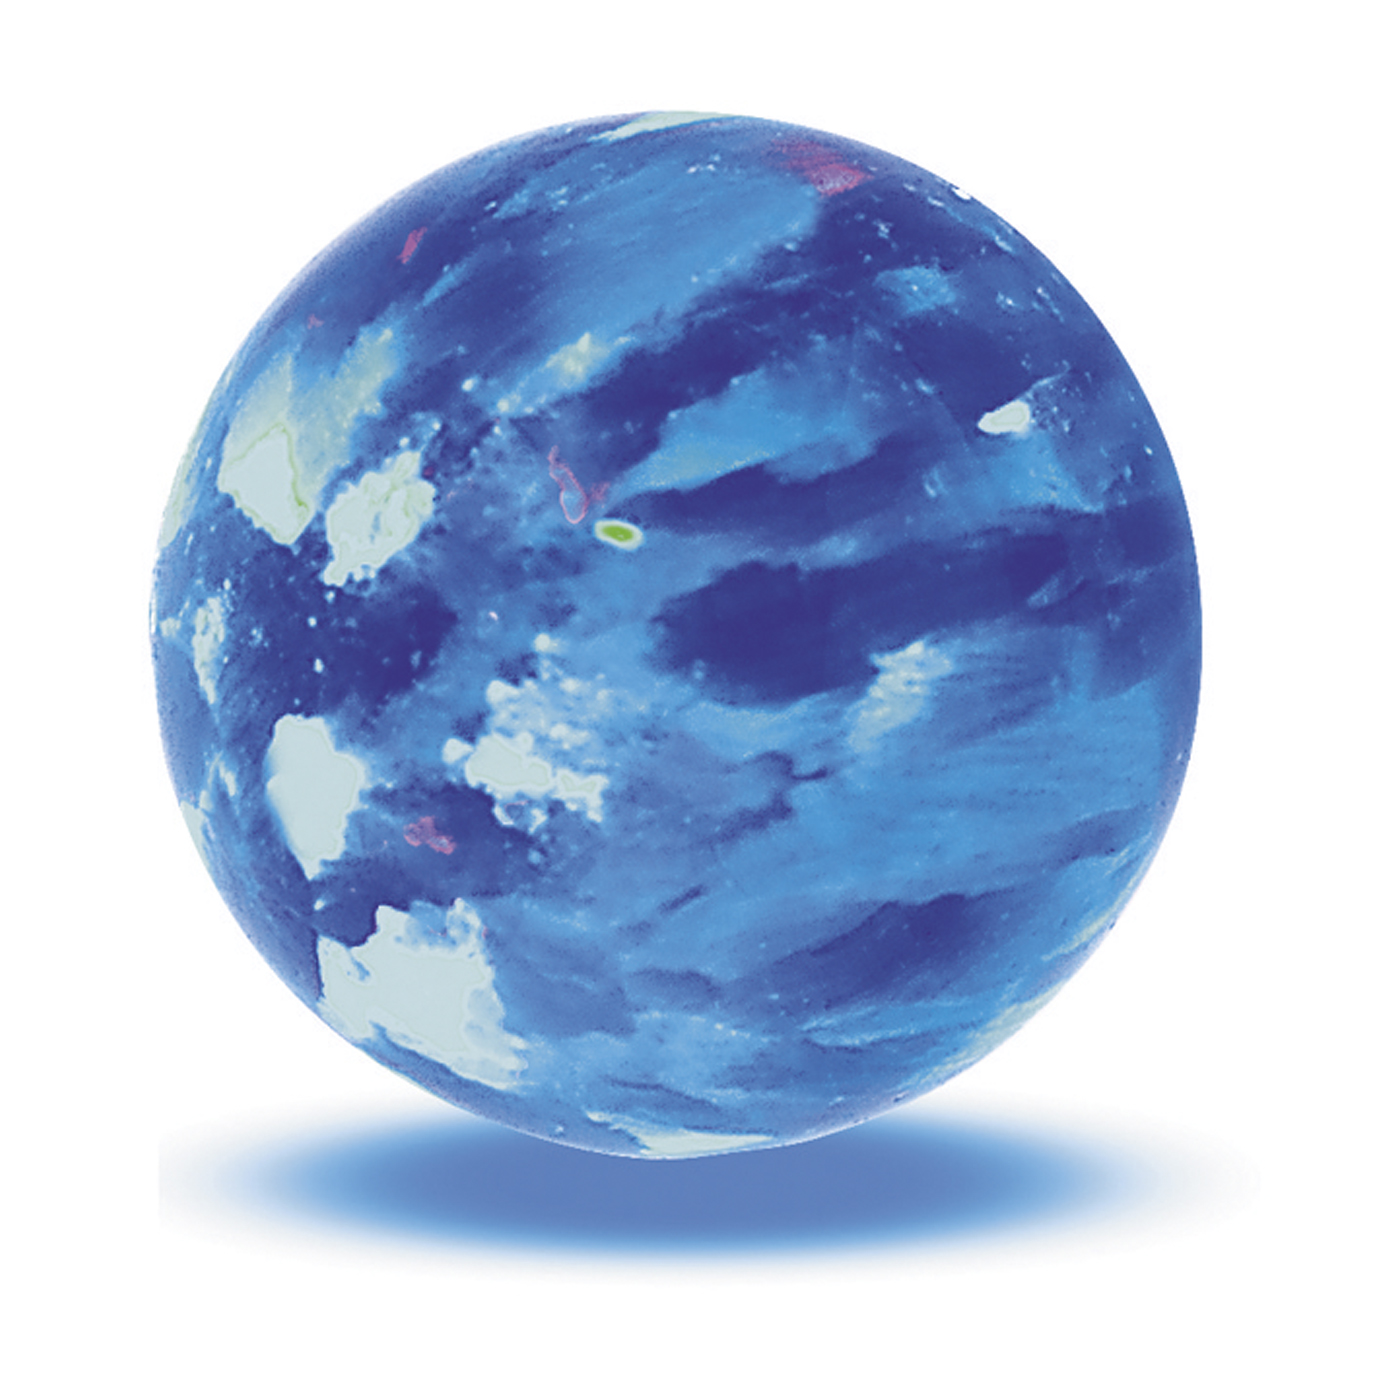 Opal Imitation Ball, Blue, ø 4 mm, Spot Drilled - 1 piece